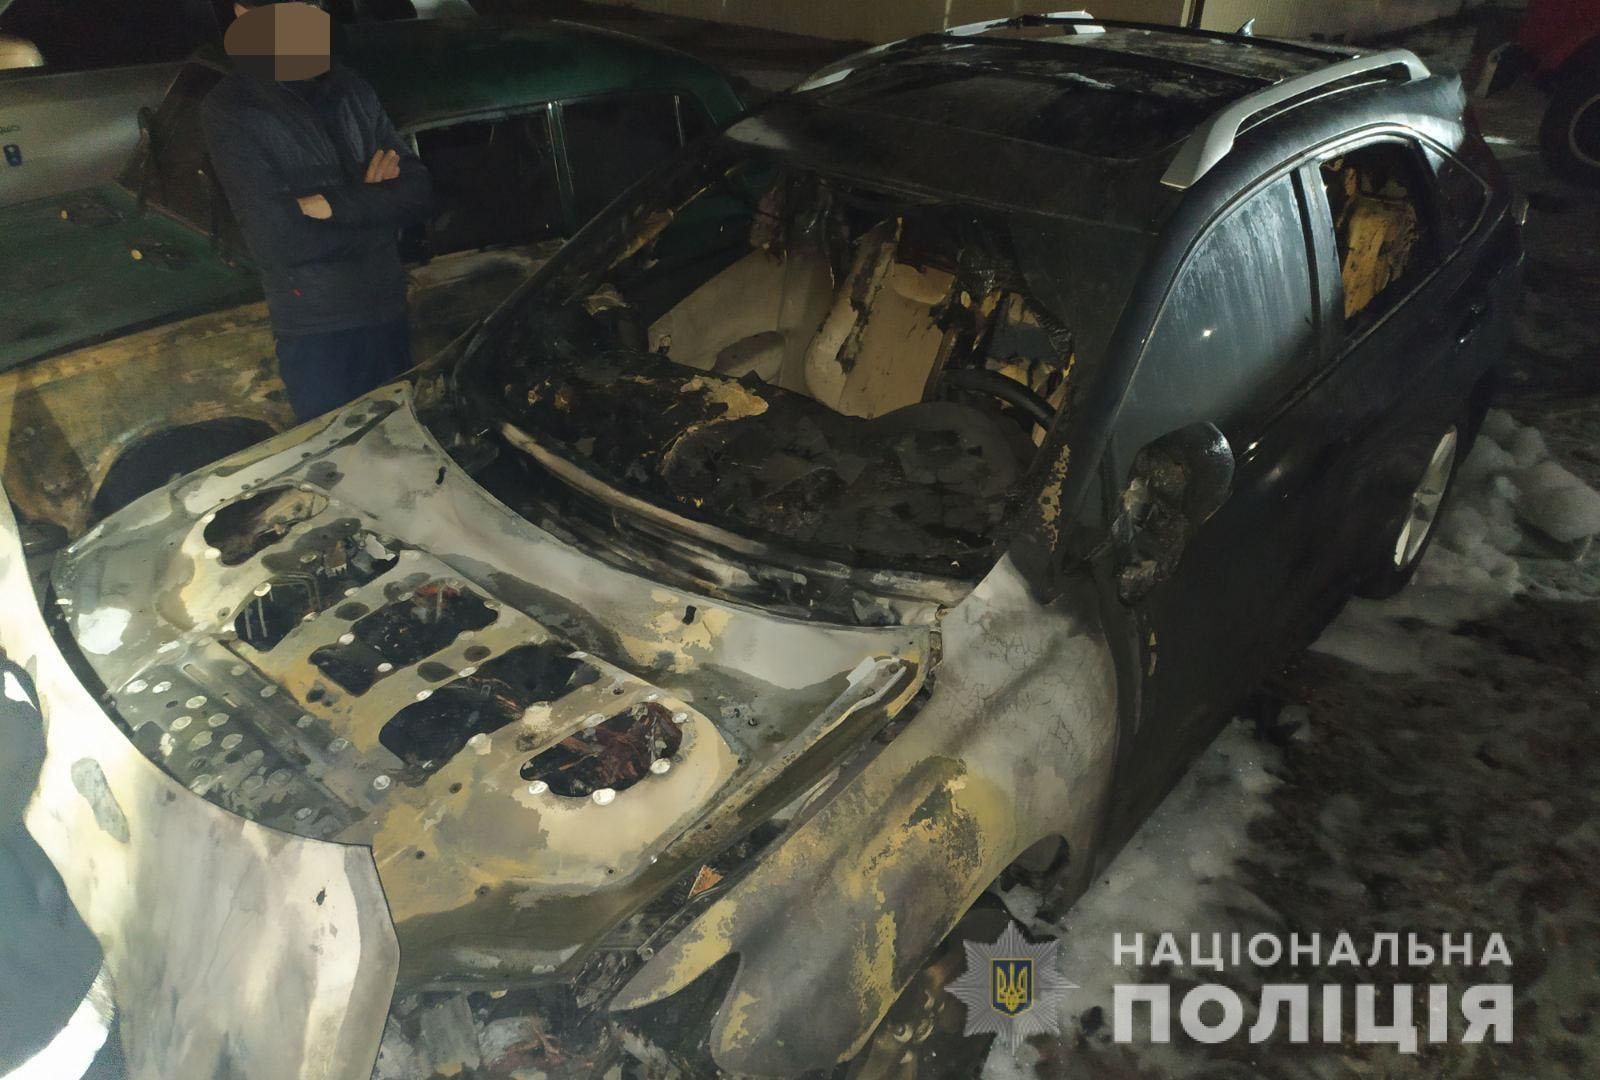 Кандидат від Слуги народу звинувачує мера Зеленського в підпалі авто